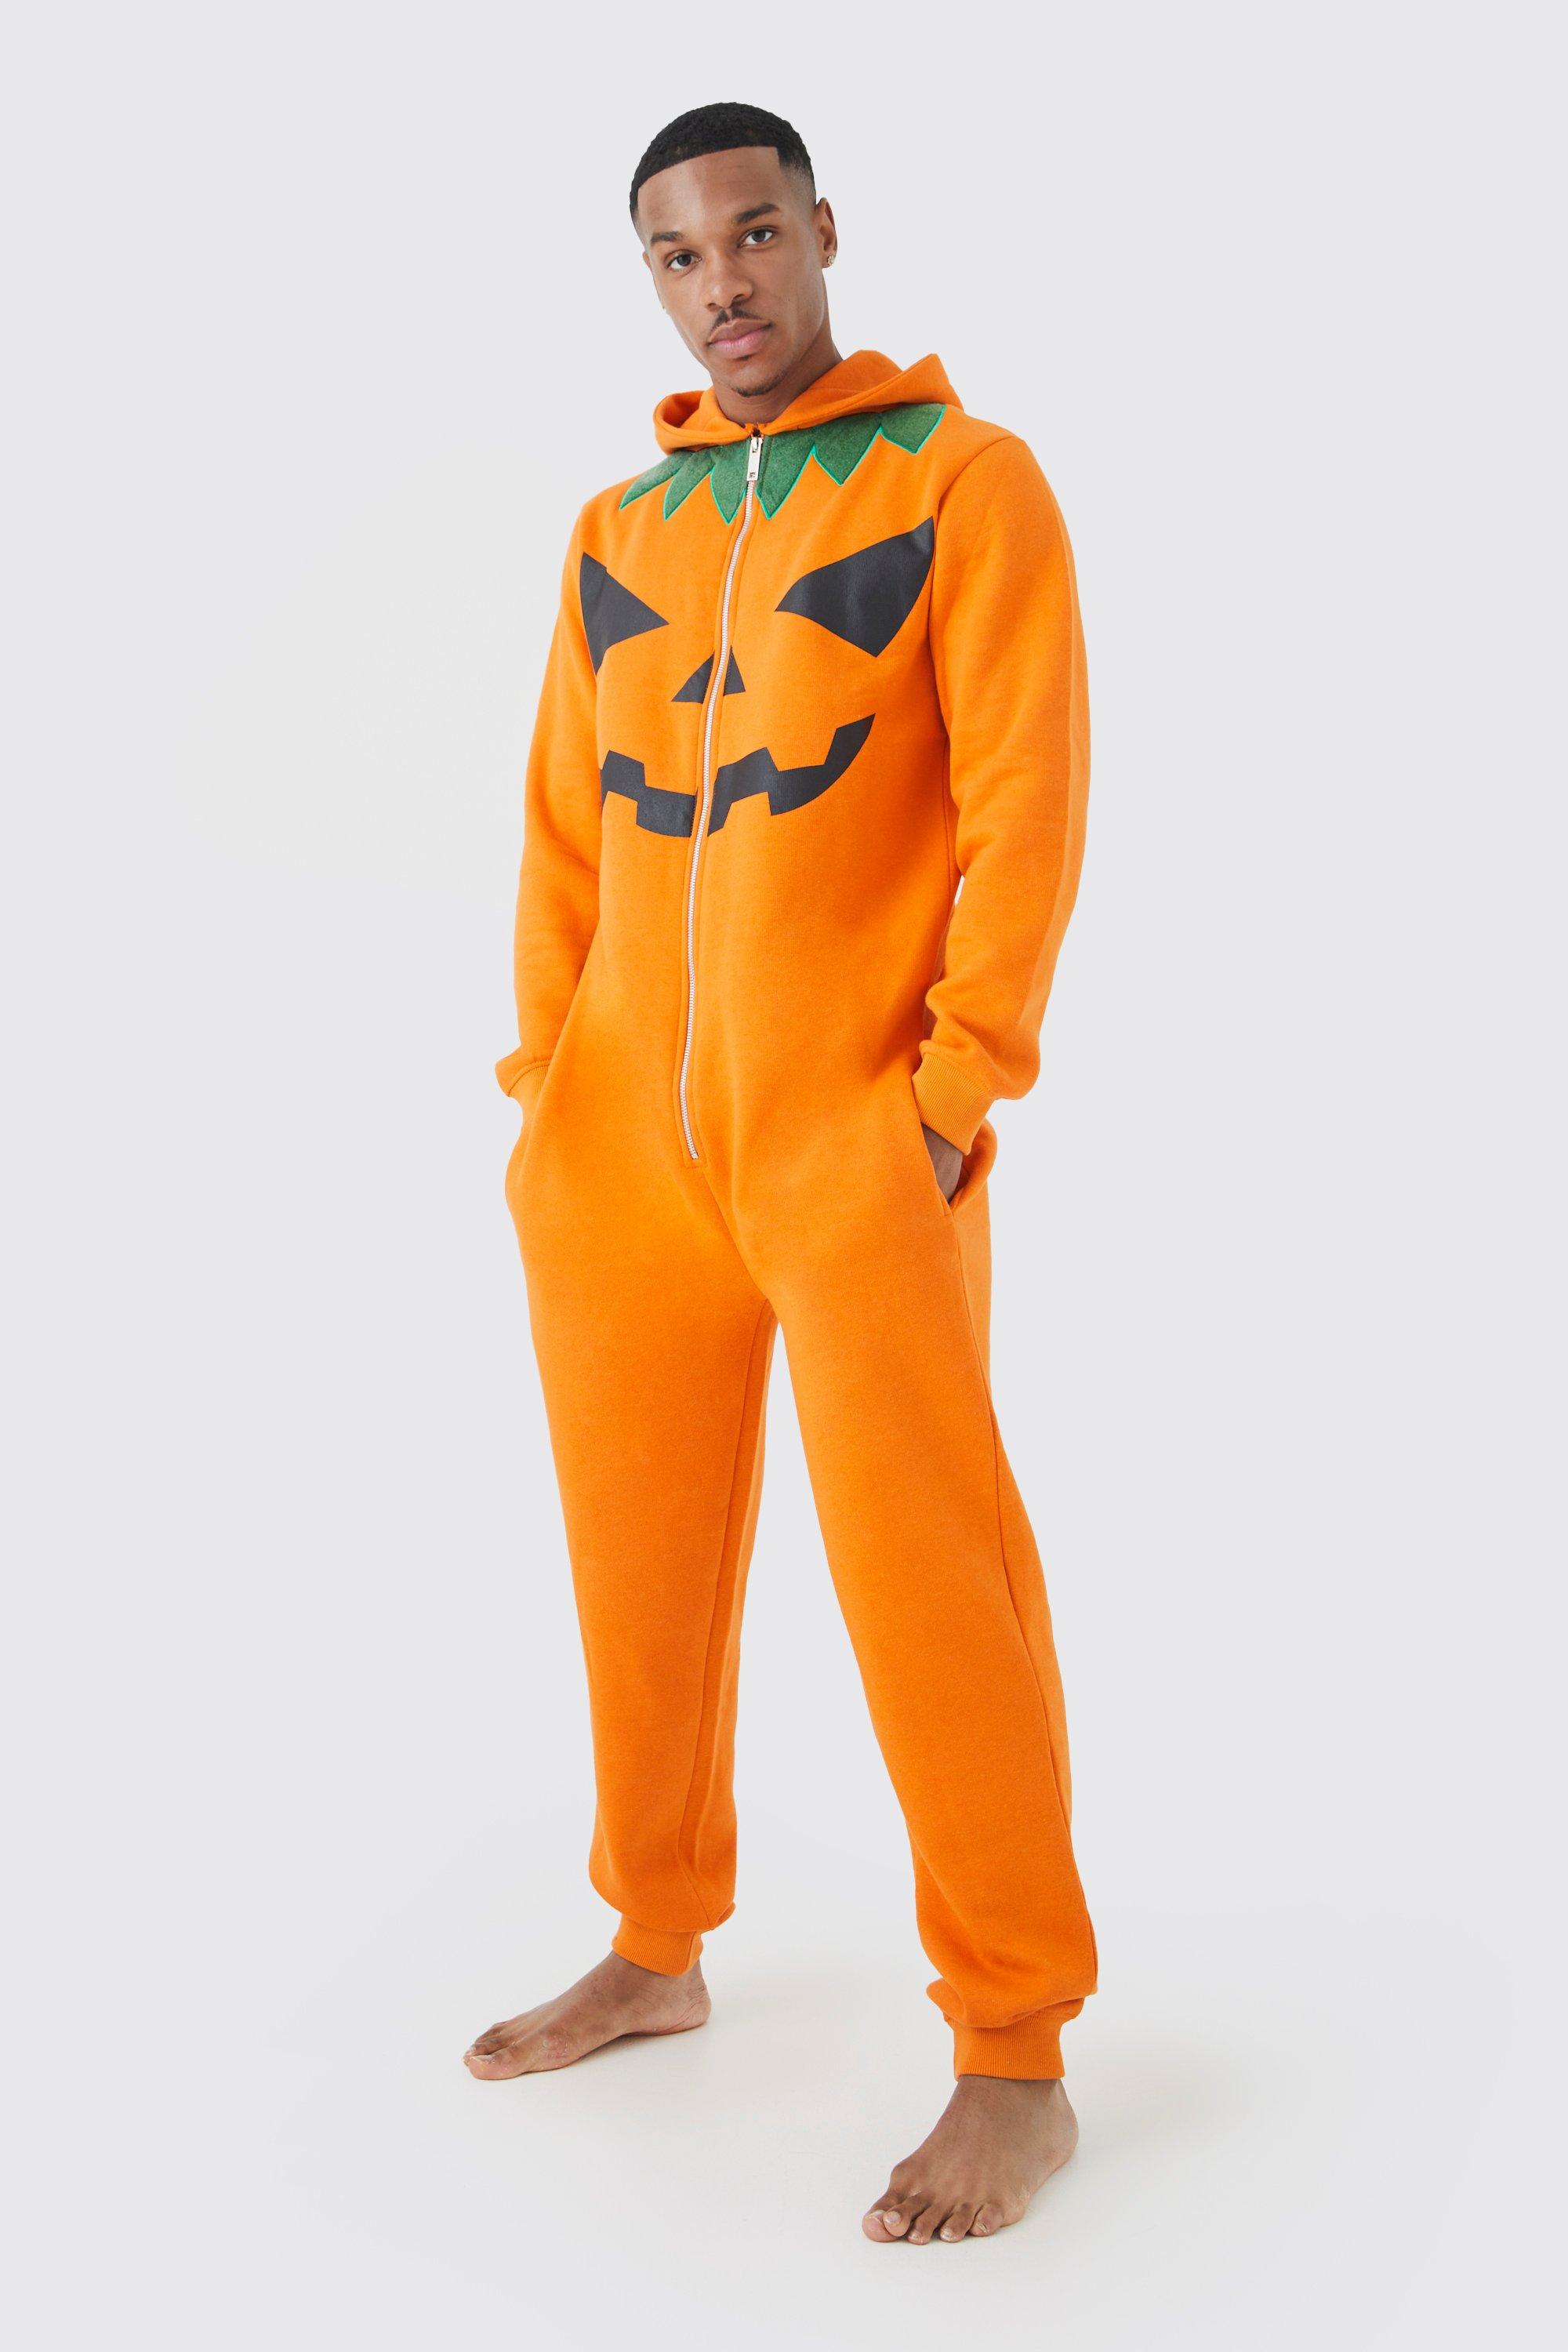 mens orange pumpkin onesie, orange